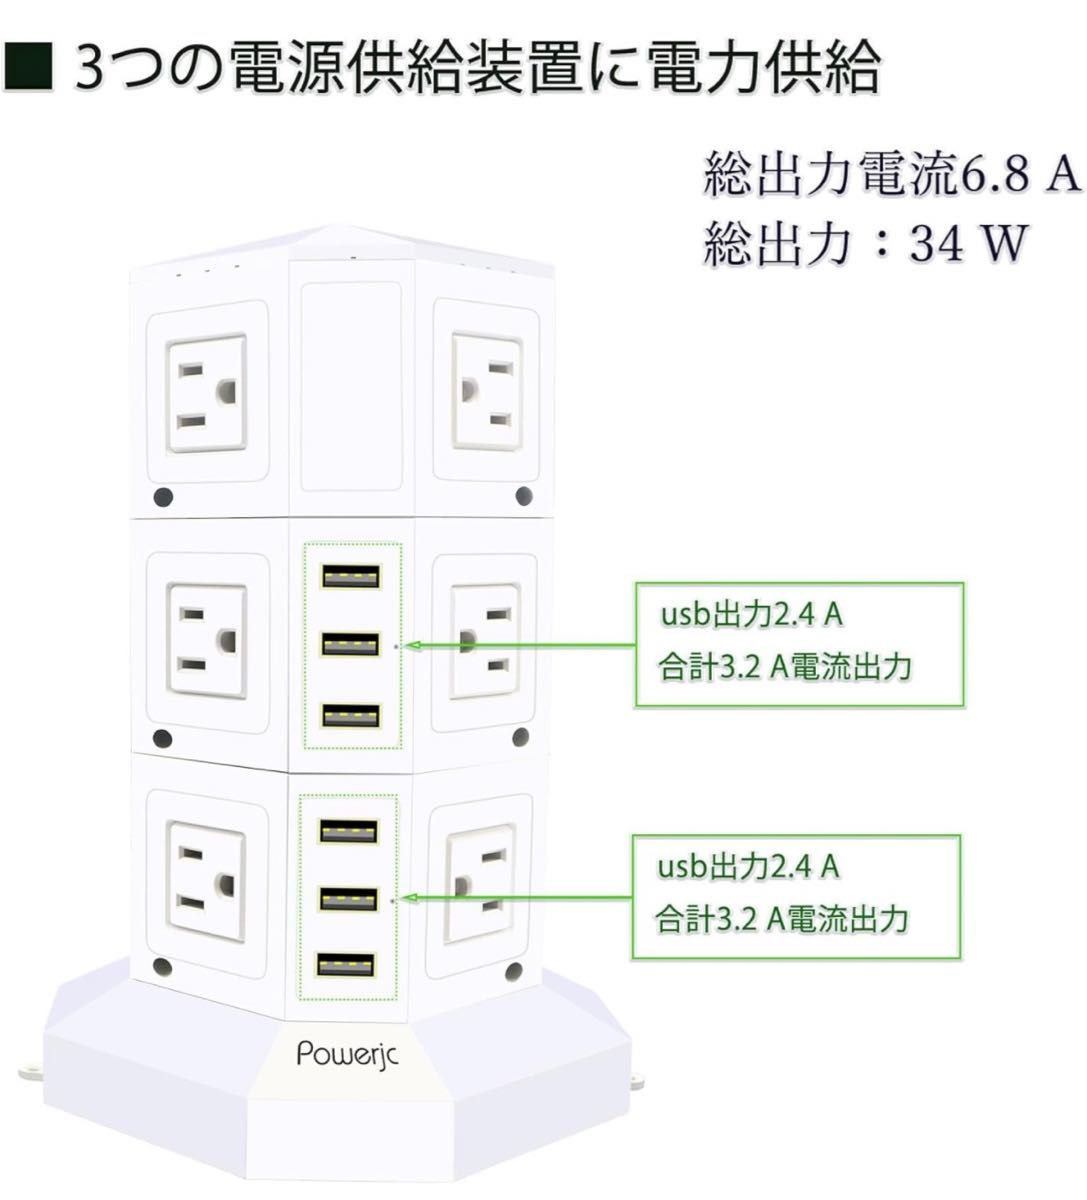 【2個セット】電源タップ タワー式 縦型コンセント オフィス 会議用 USB急速充電 3層